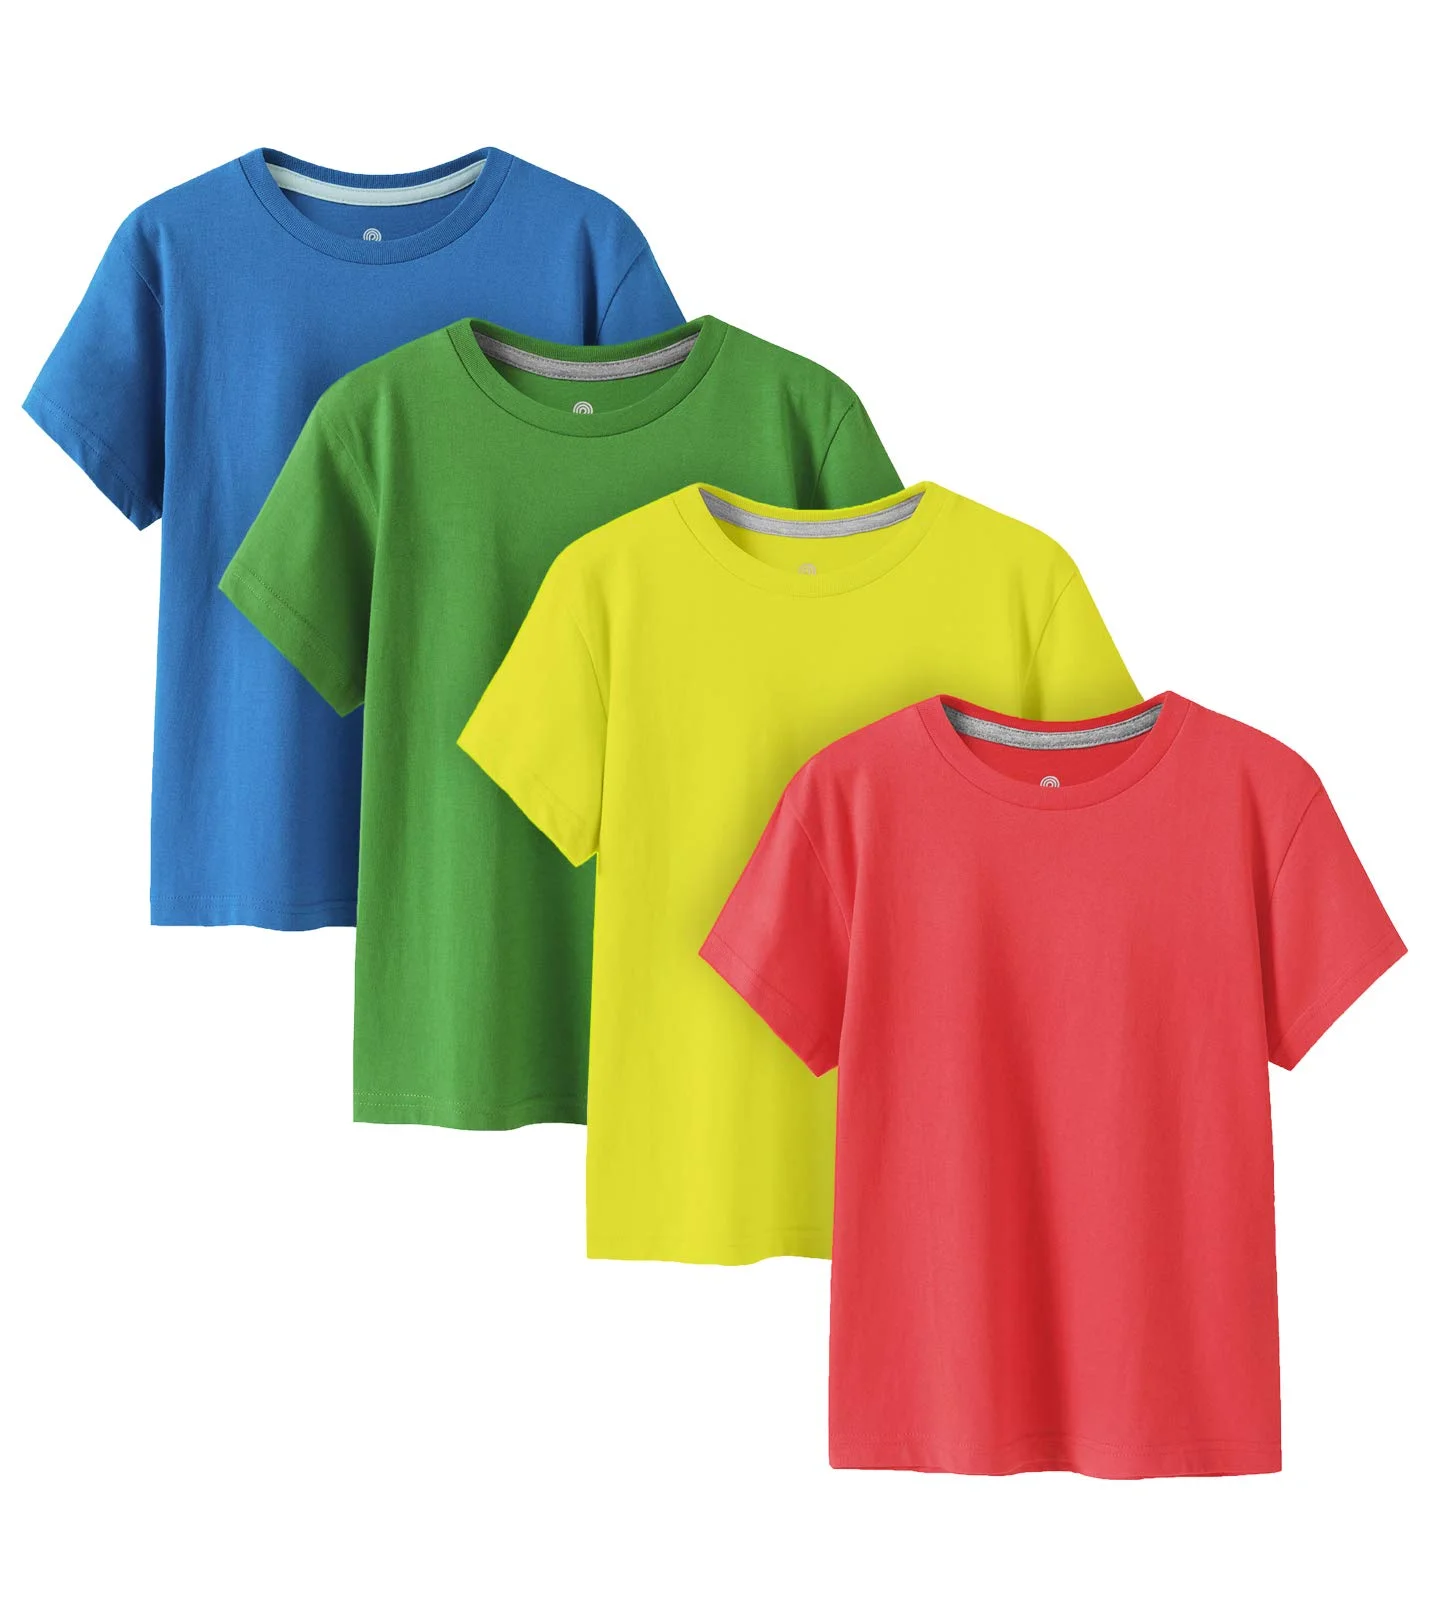 Wholesale T-shirts Peru